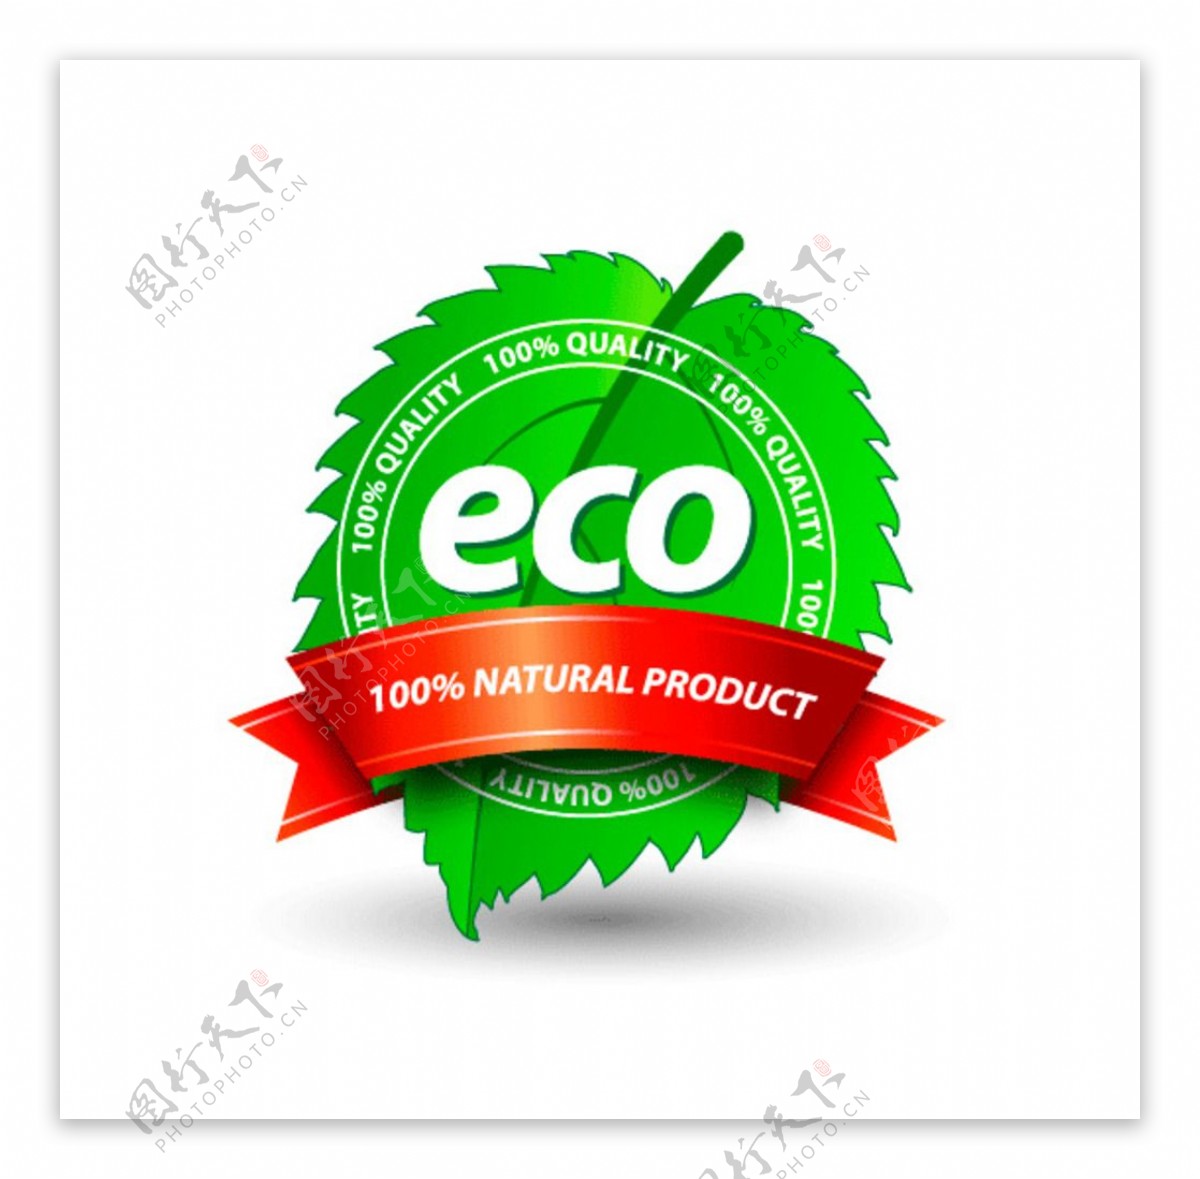 eco叶子标签立体图标